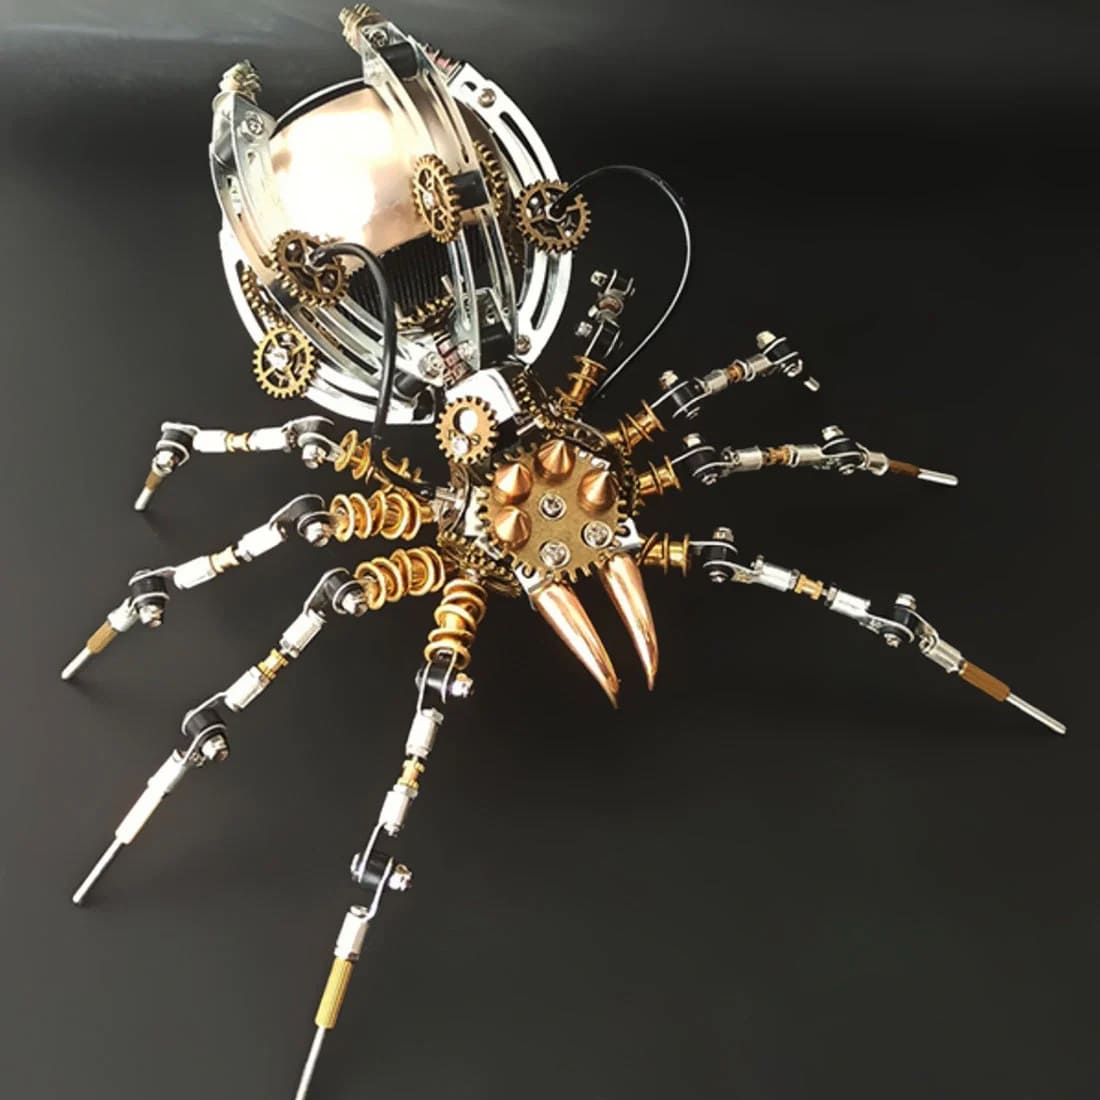 Múnla spider 3D + cainteoir bluetooth